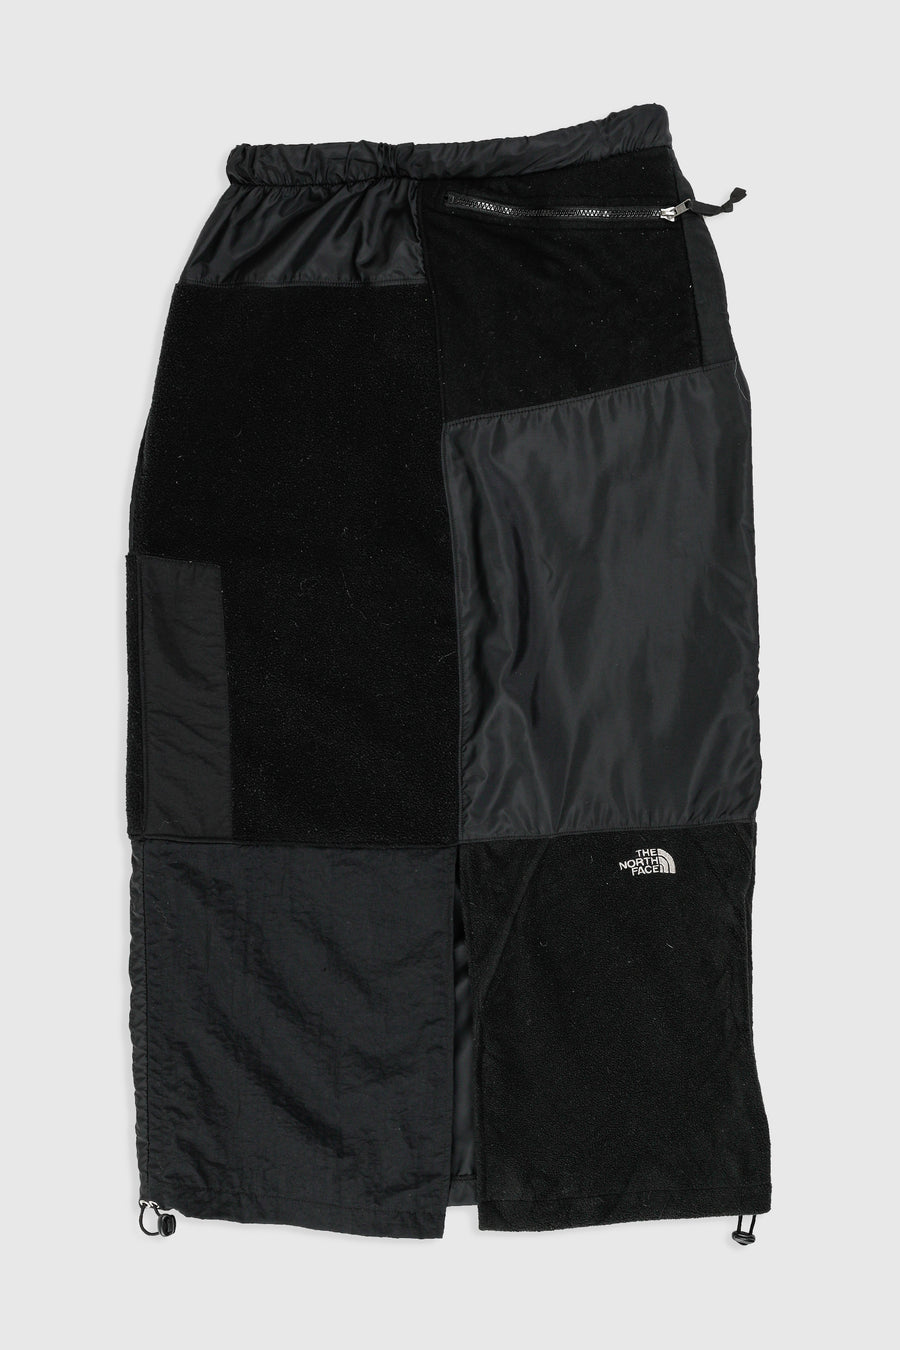 Rework North Face Fleece Long Skirt - M